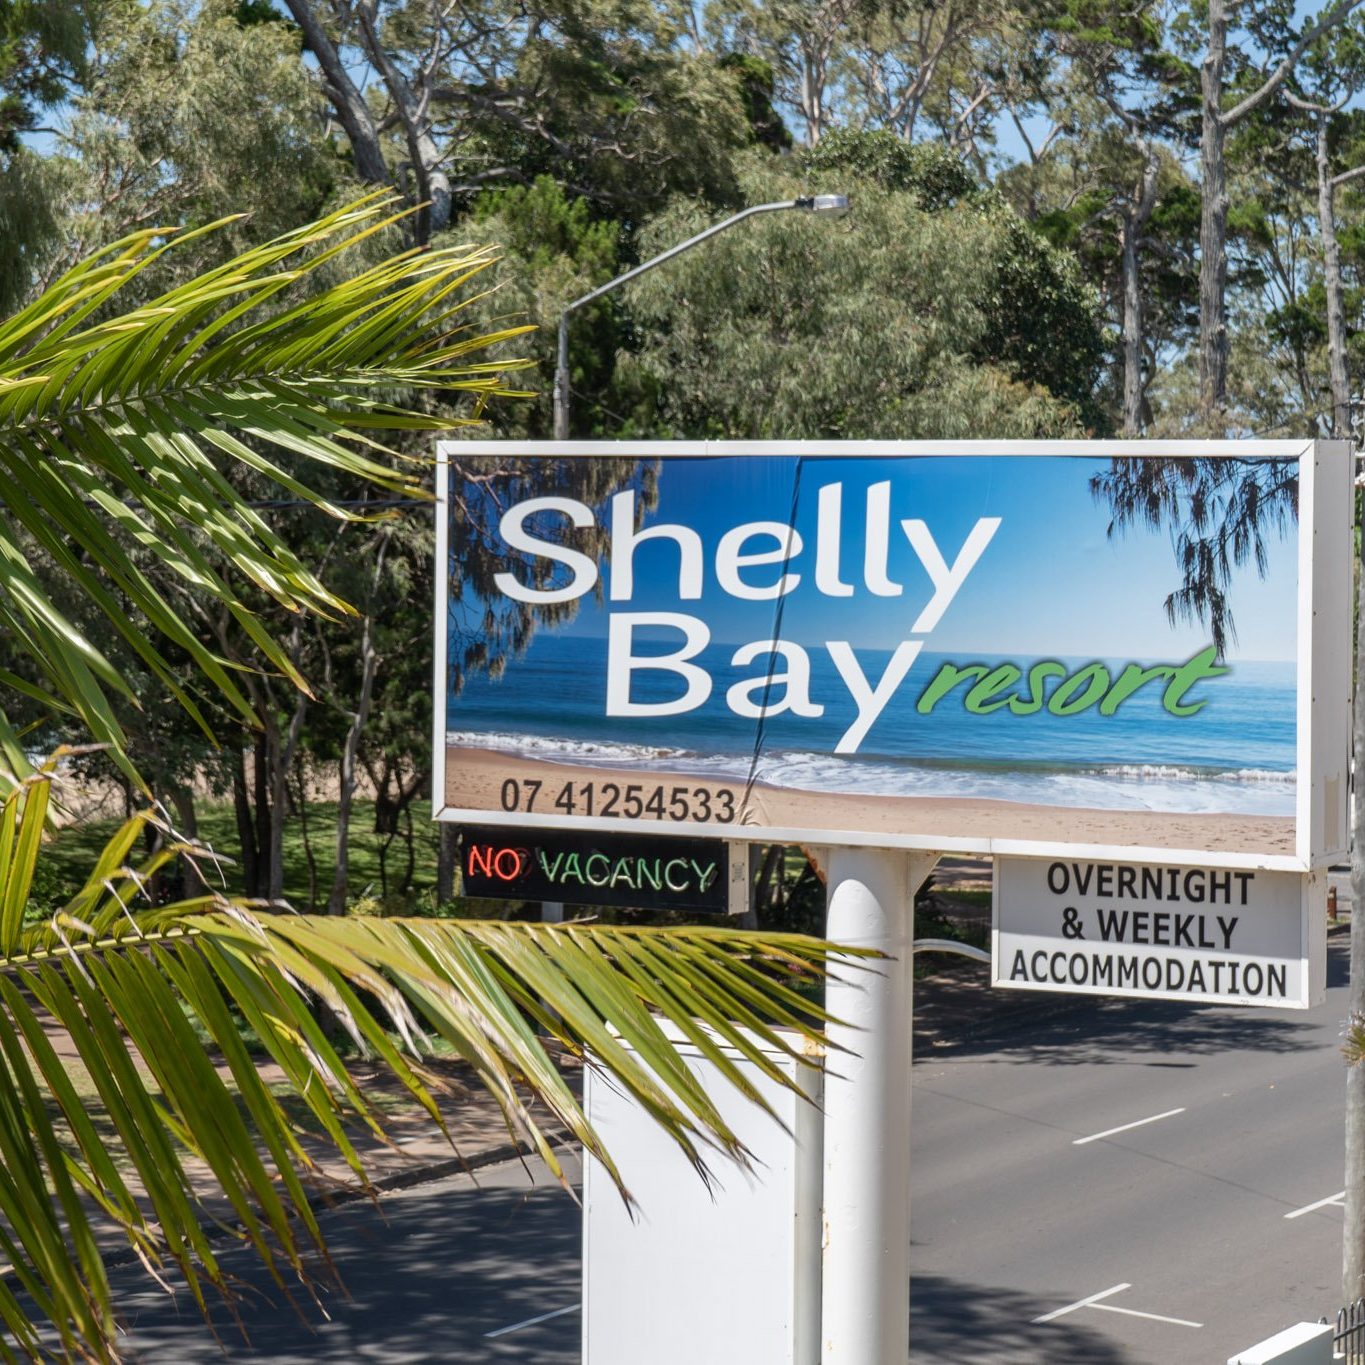 shelly-bay-resort-hervey-bay